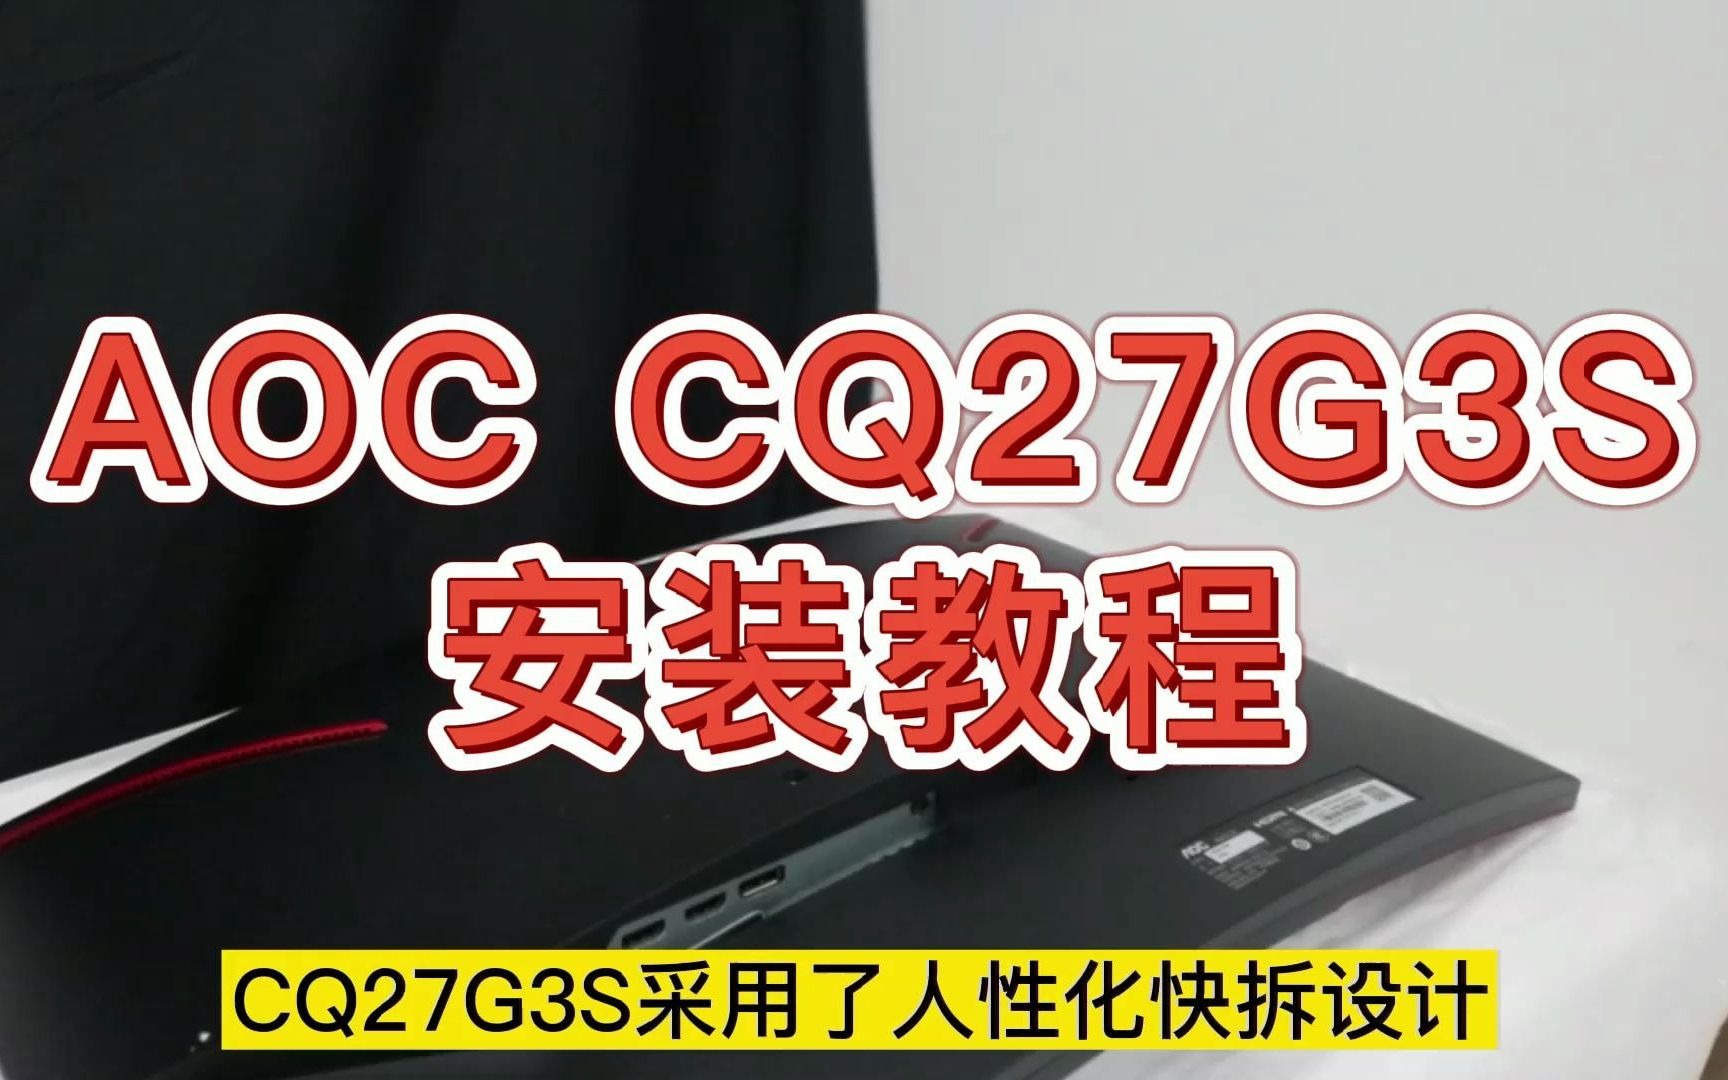 AOC显示器 CQ27G3S 安装教程